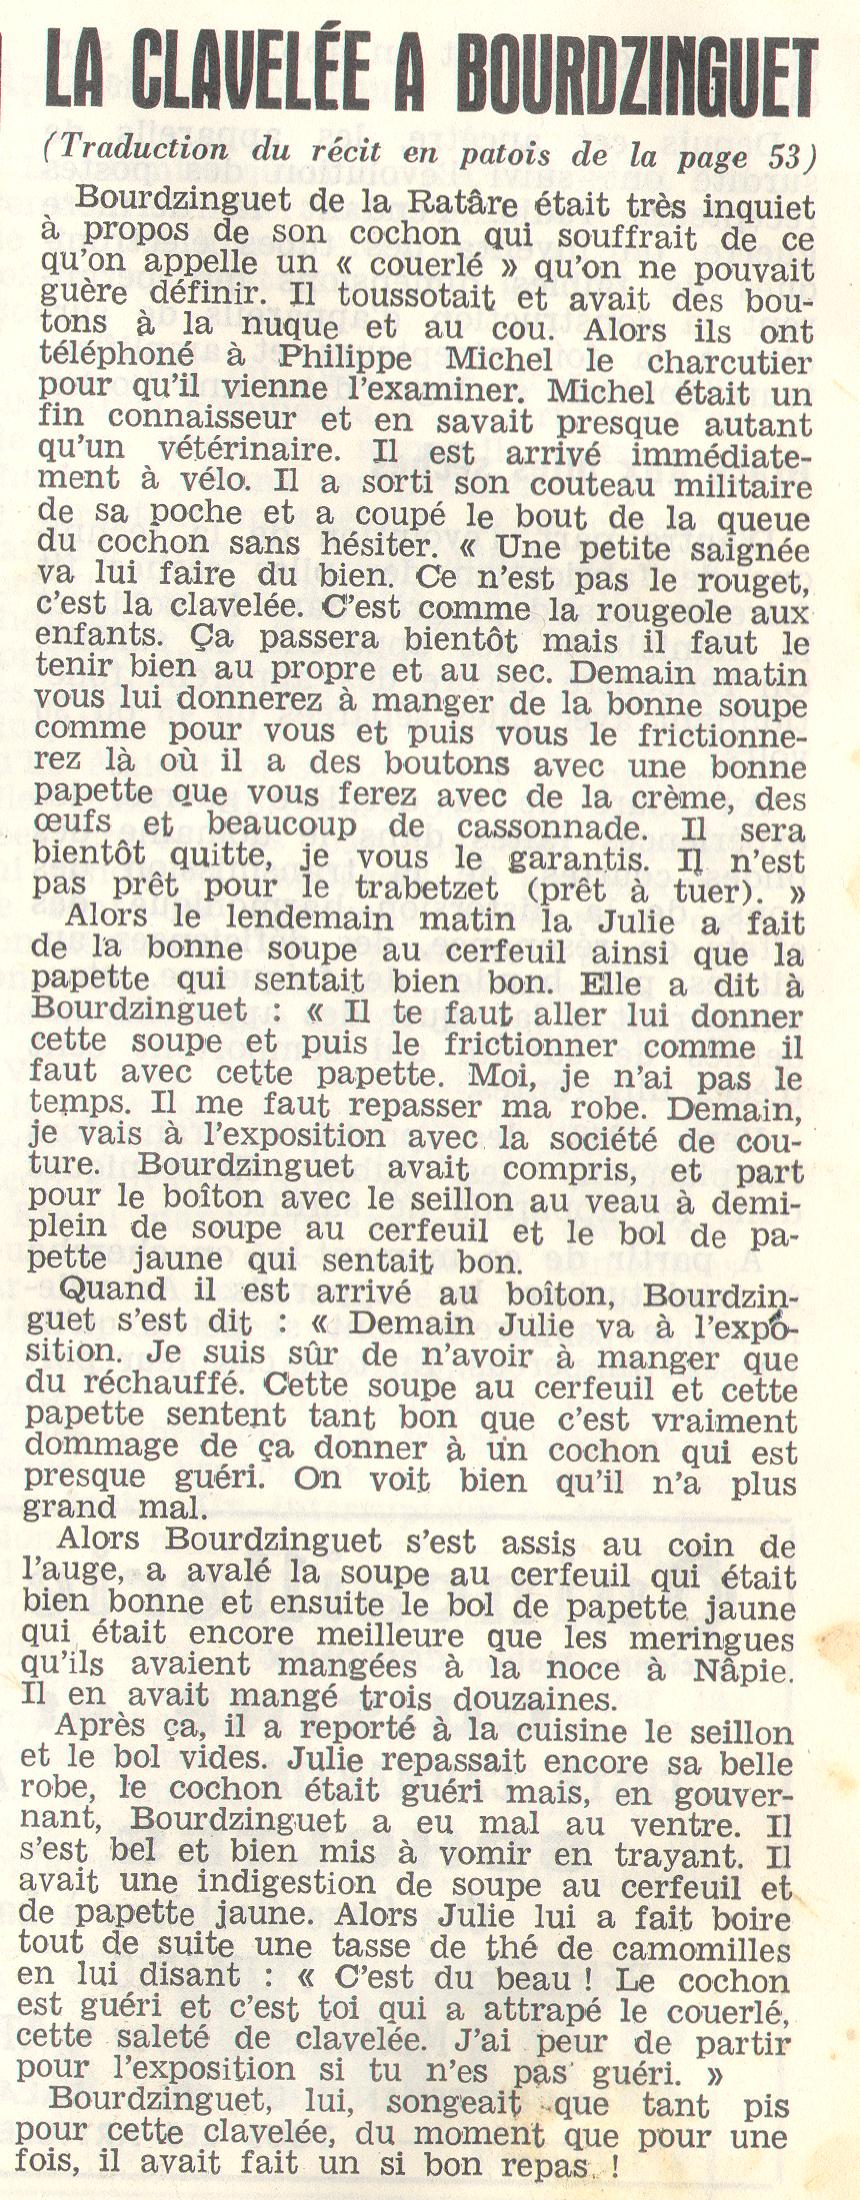 La clliavalare a Bourdzinguet Messager%20Boiteux-francais-1966